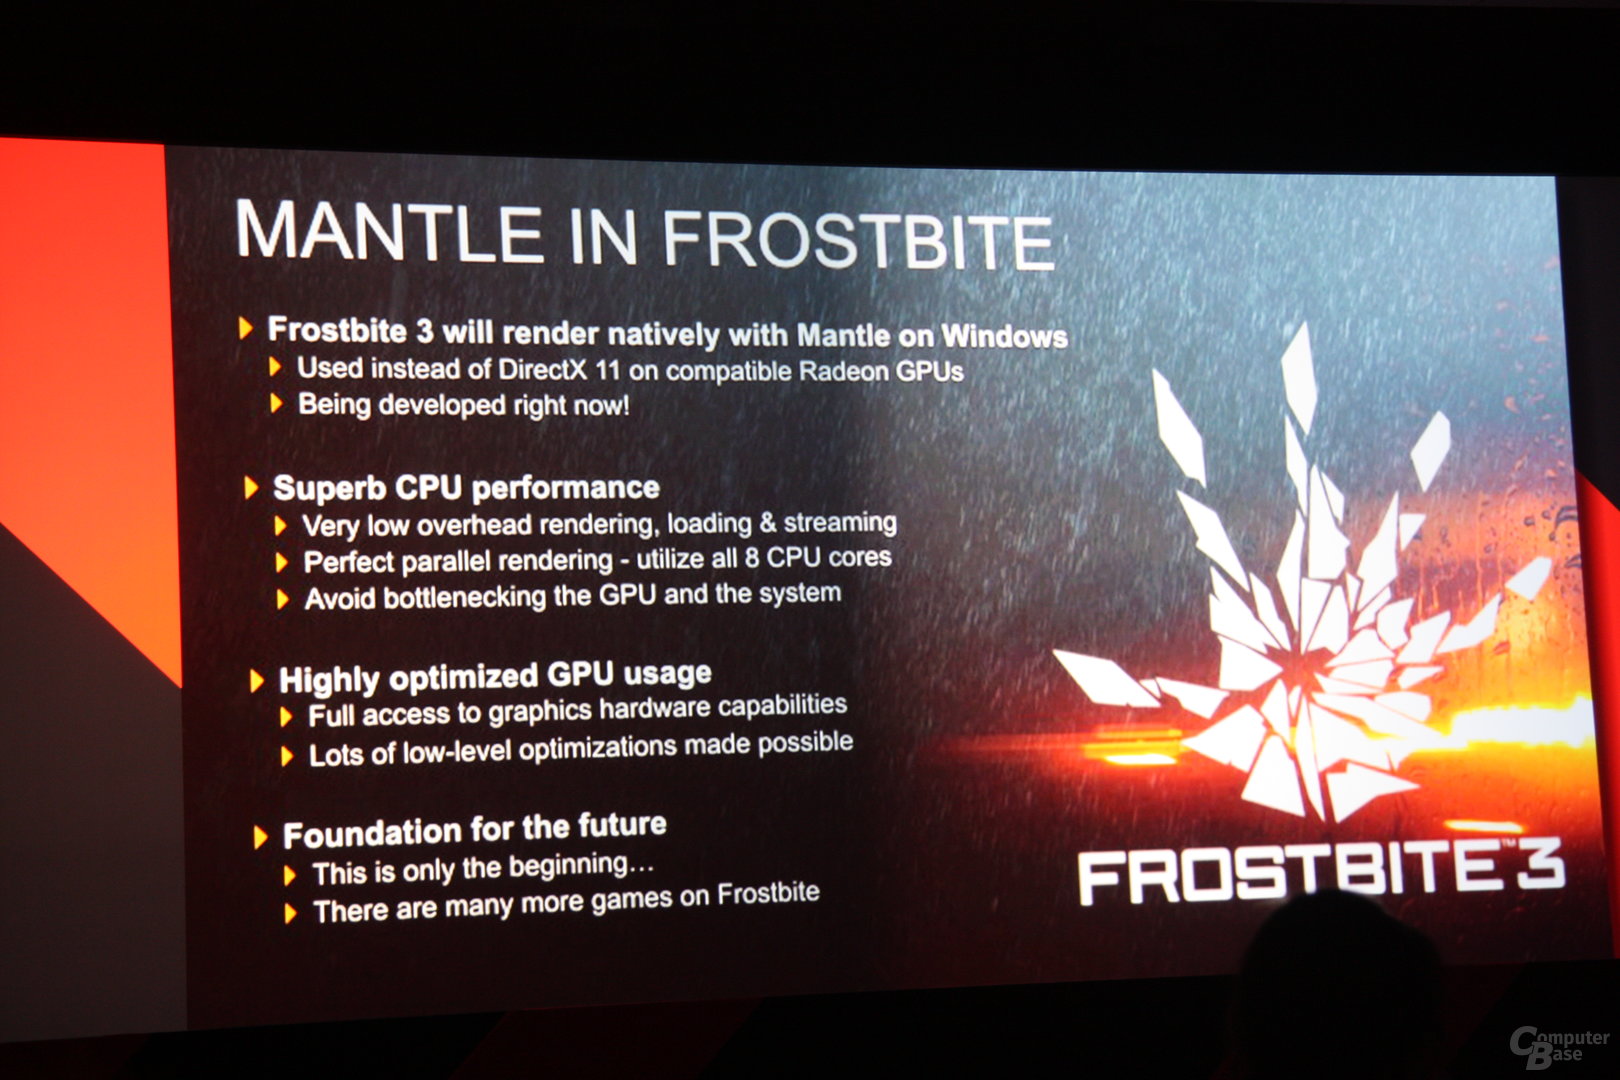 AMD Mantle in Battlefield 4